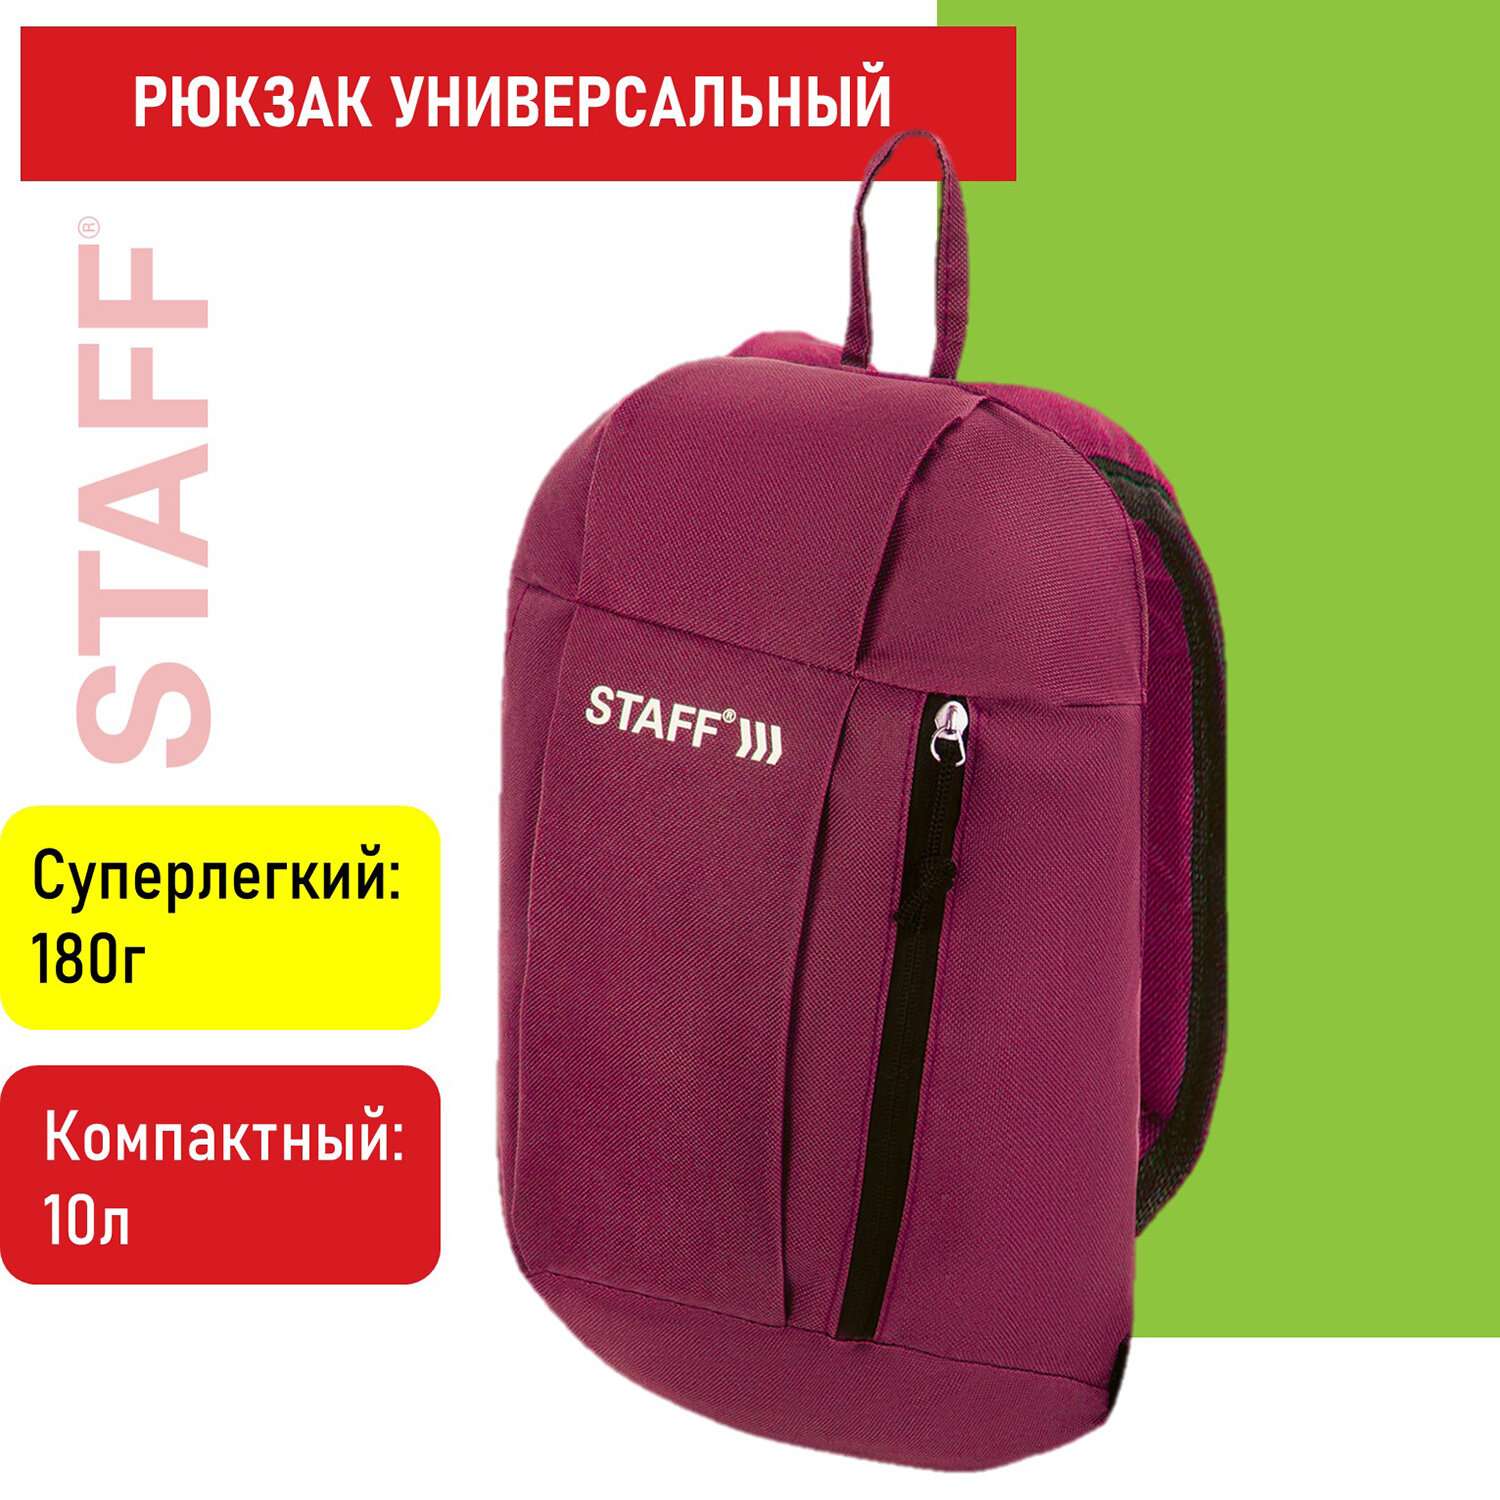 Рюкзак Staff Air компактный бордовый - фото 1